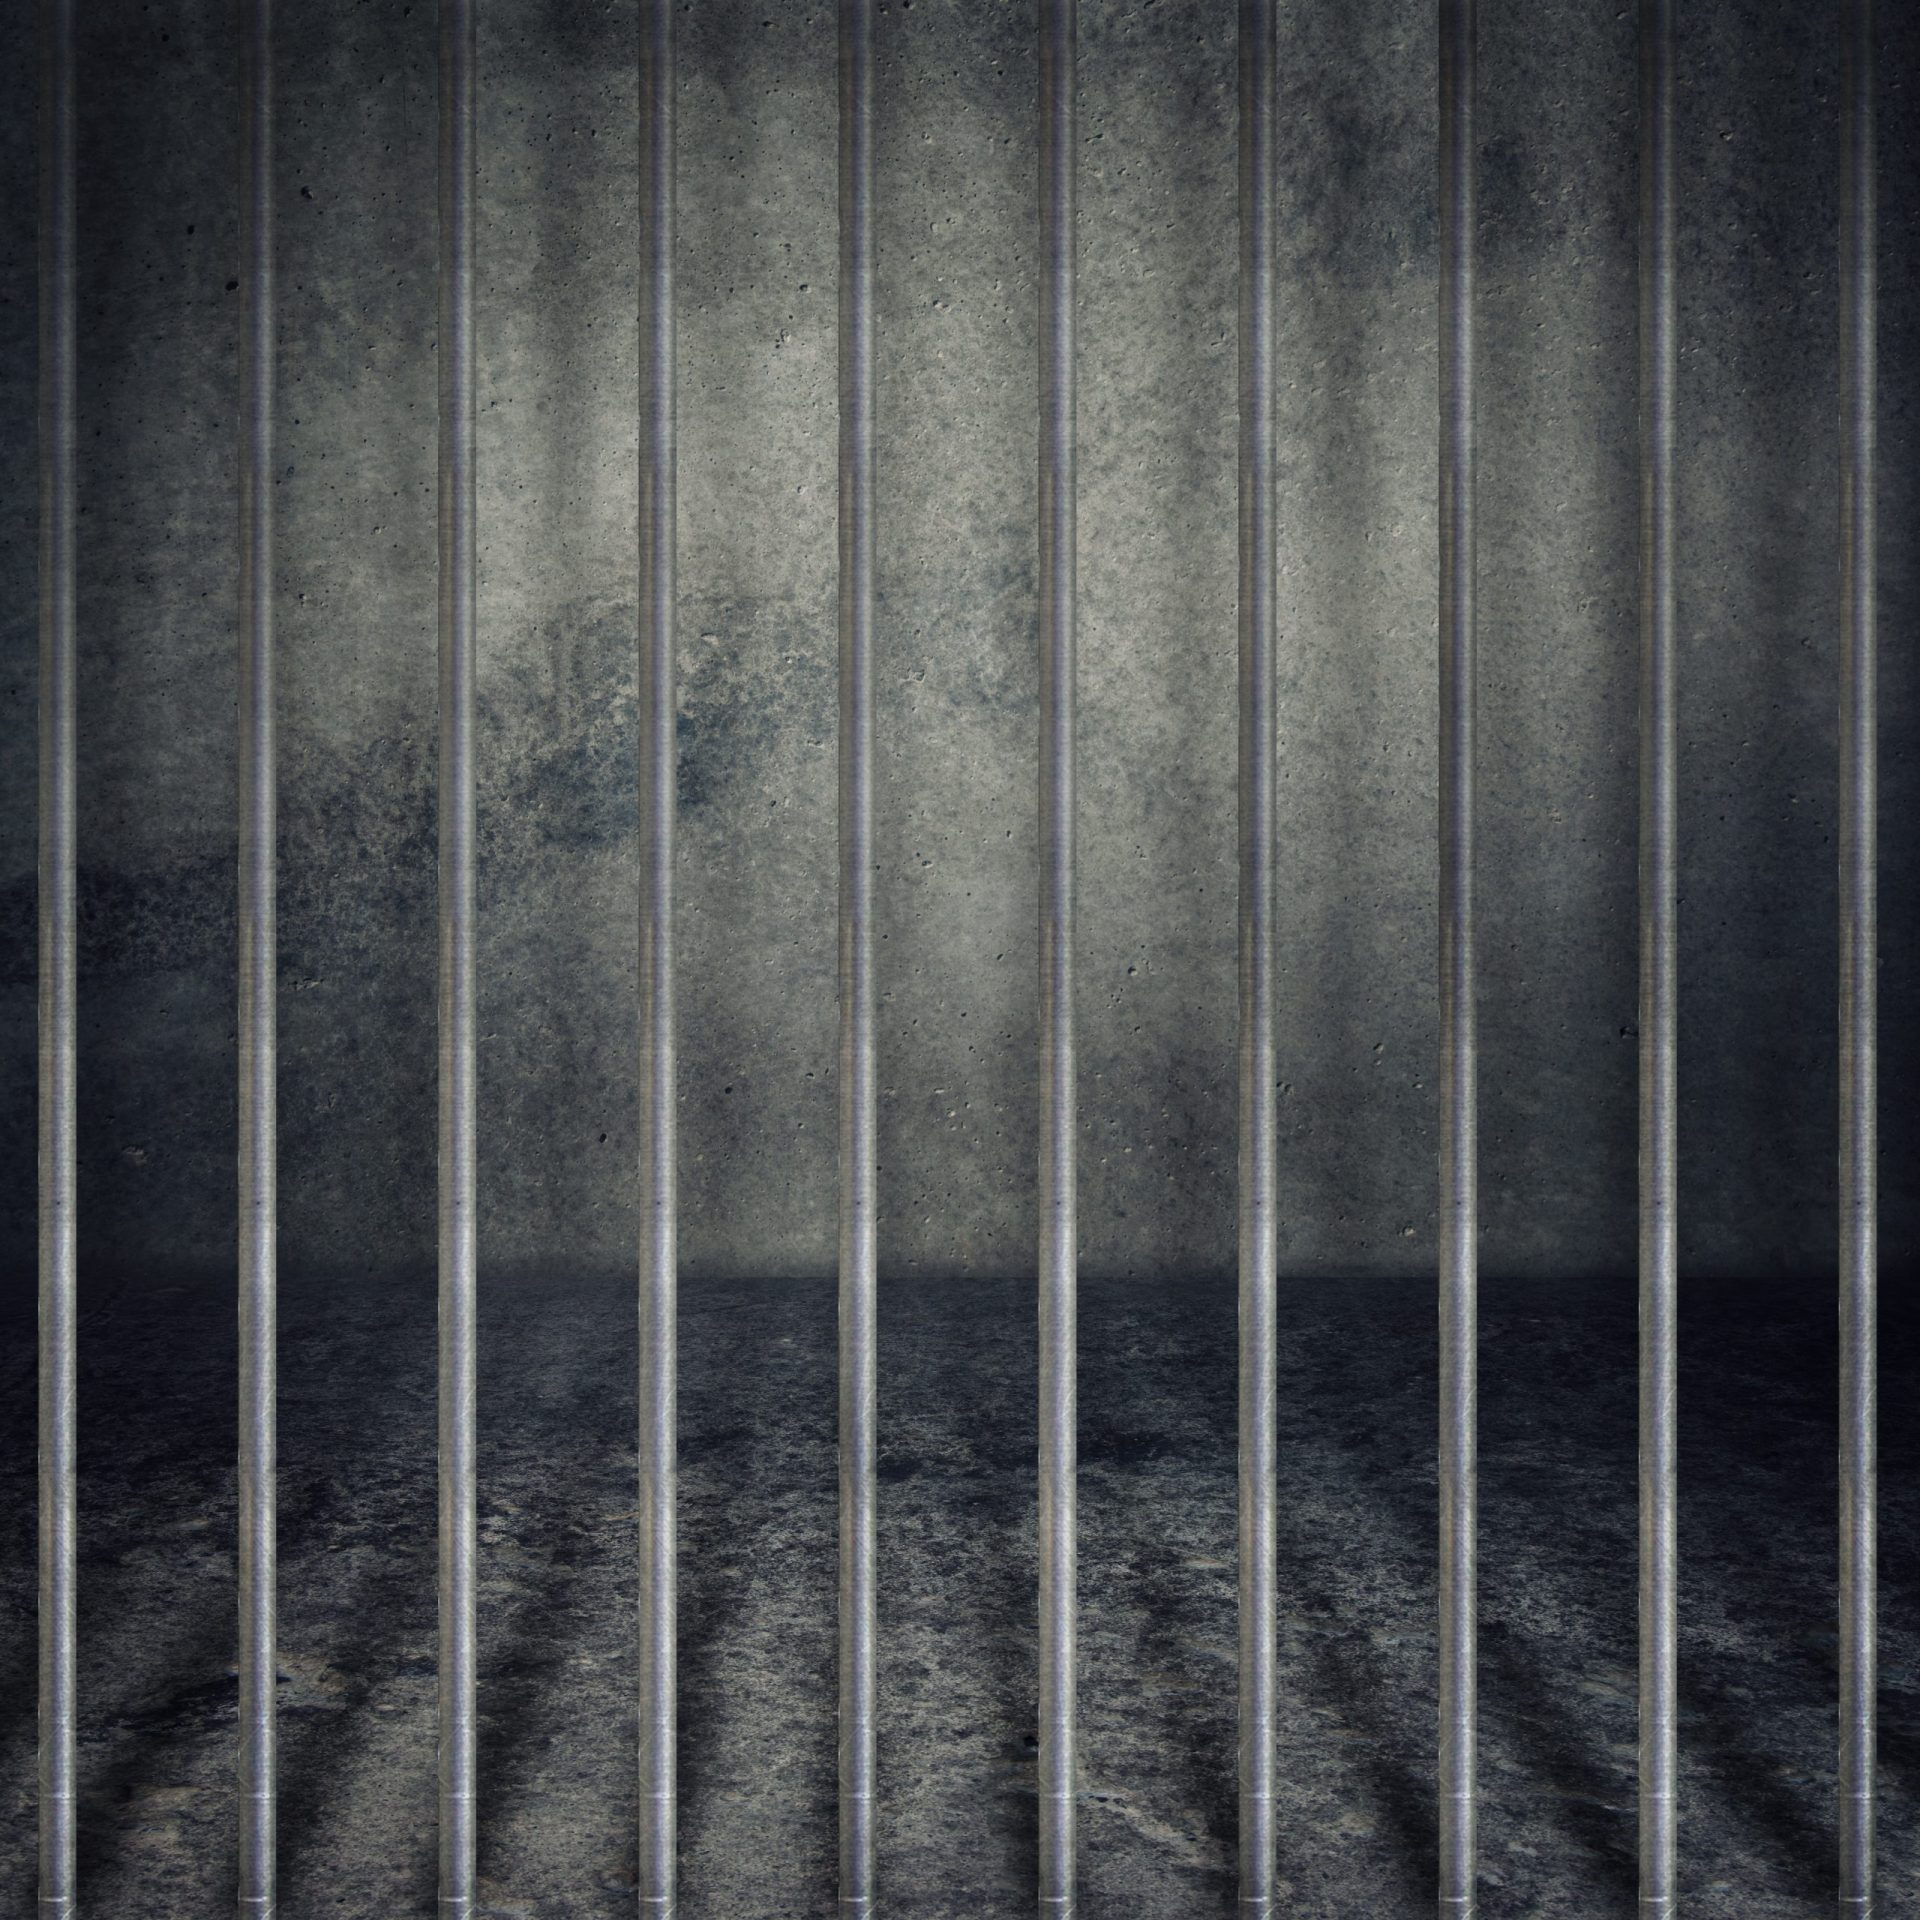 Britânica no corredor da morte na Indonésia receia ser executada em breve